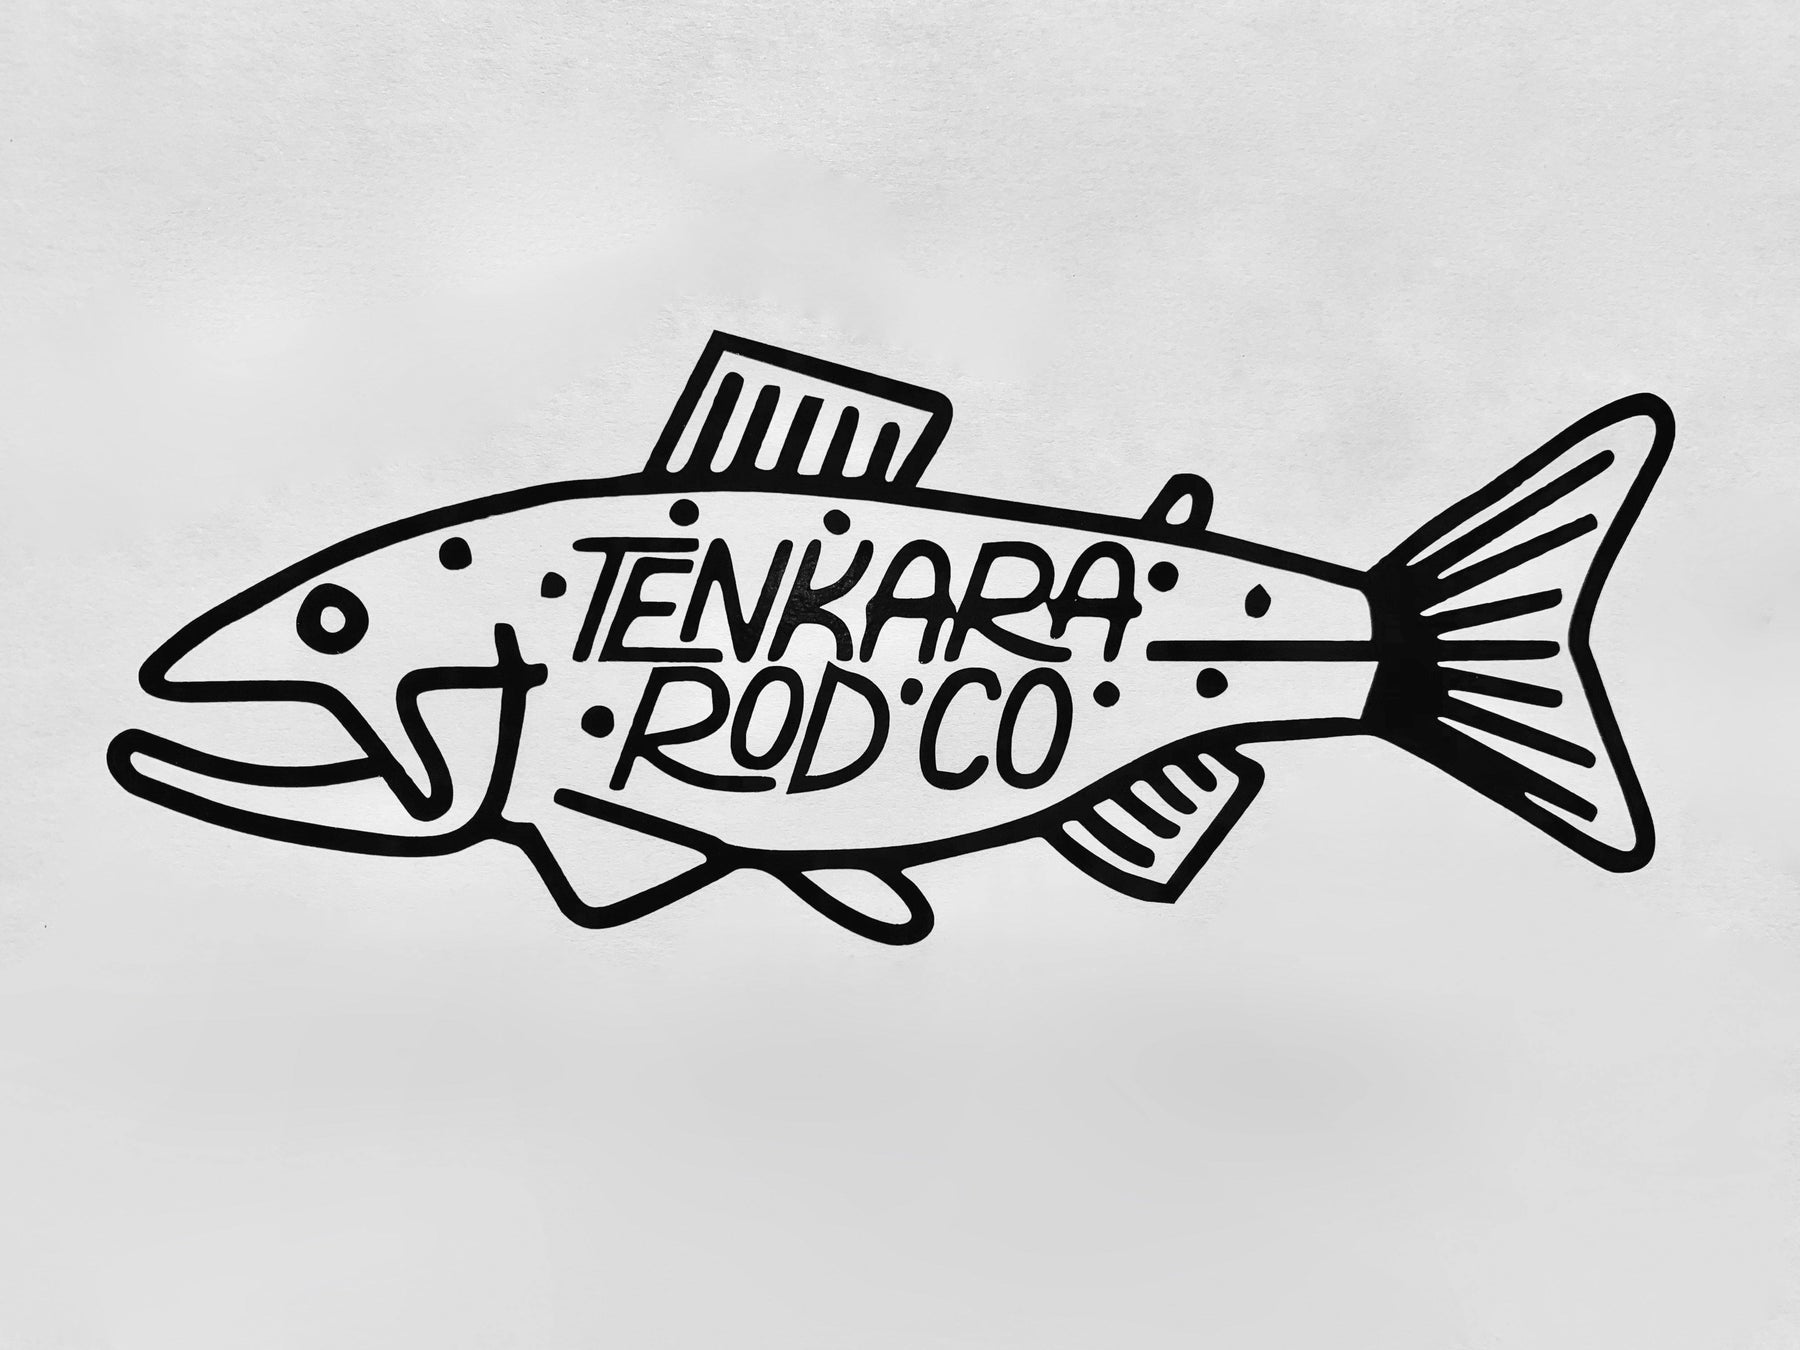 Tenkara Rod Co Fish Stickers - Tenkara Rod Co.